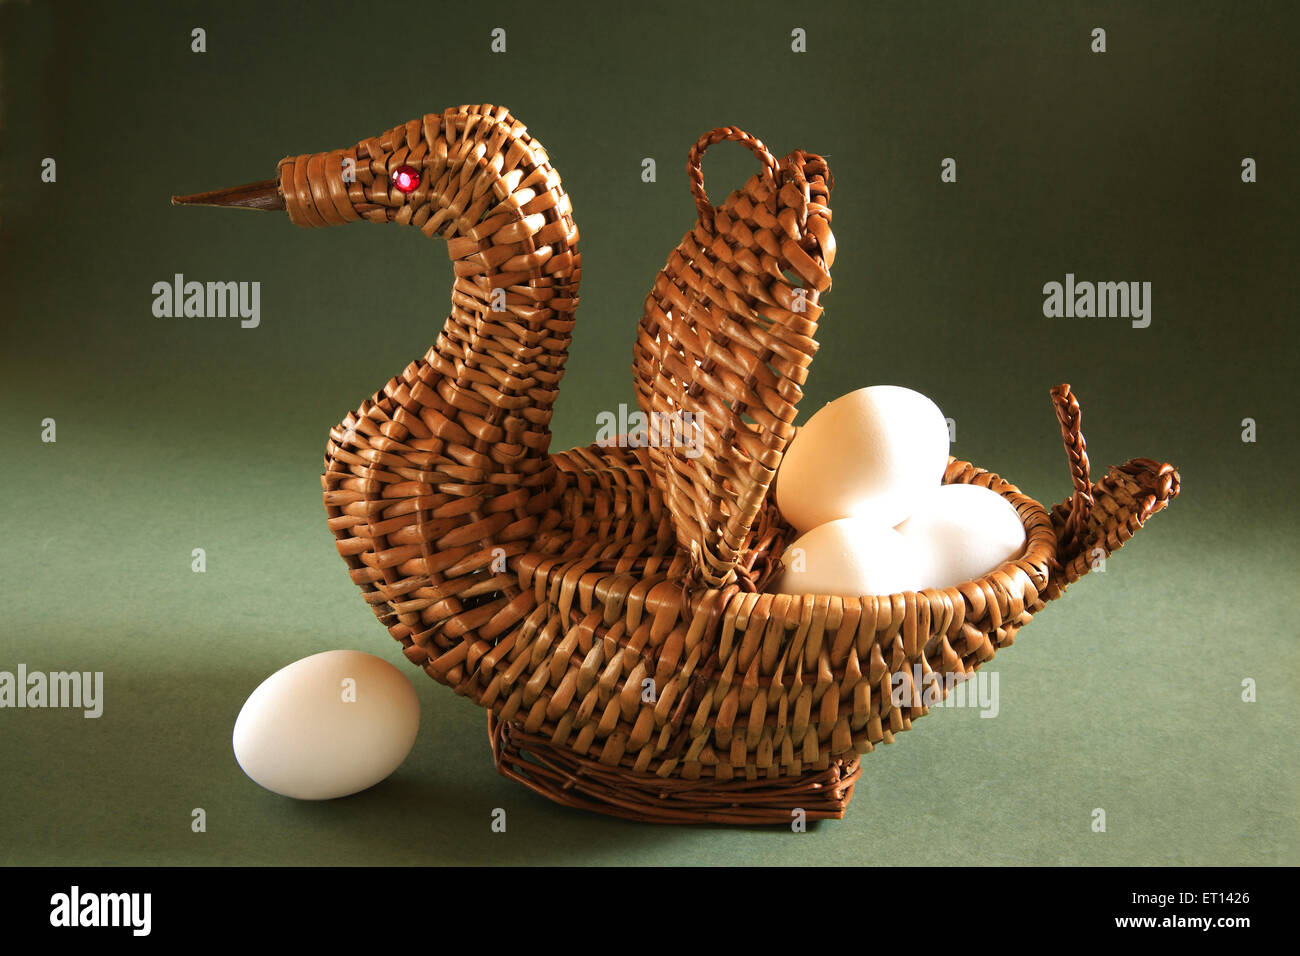 Canne artistique forme de panier avec des œufs de canard sur fond vert Banque D'Images